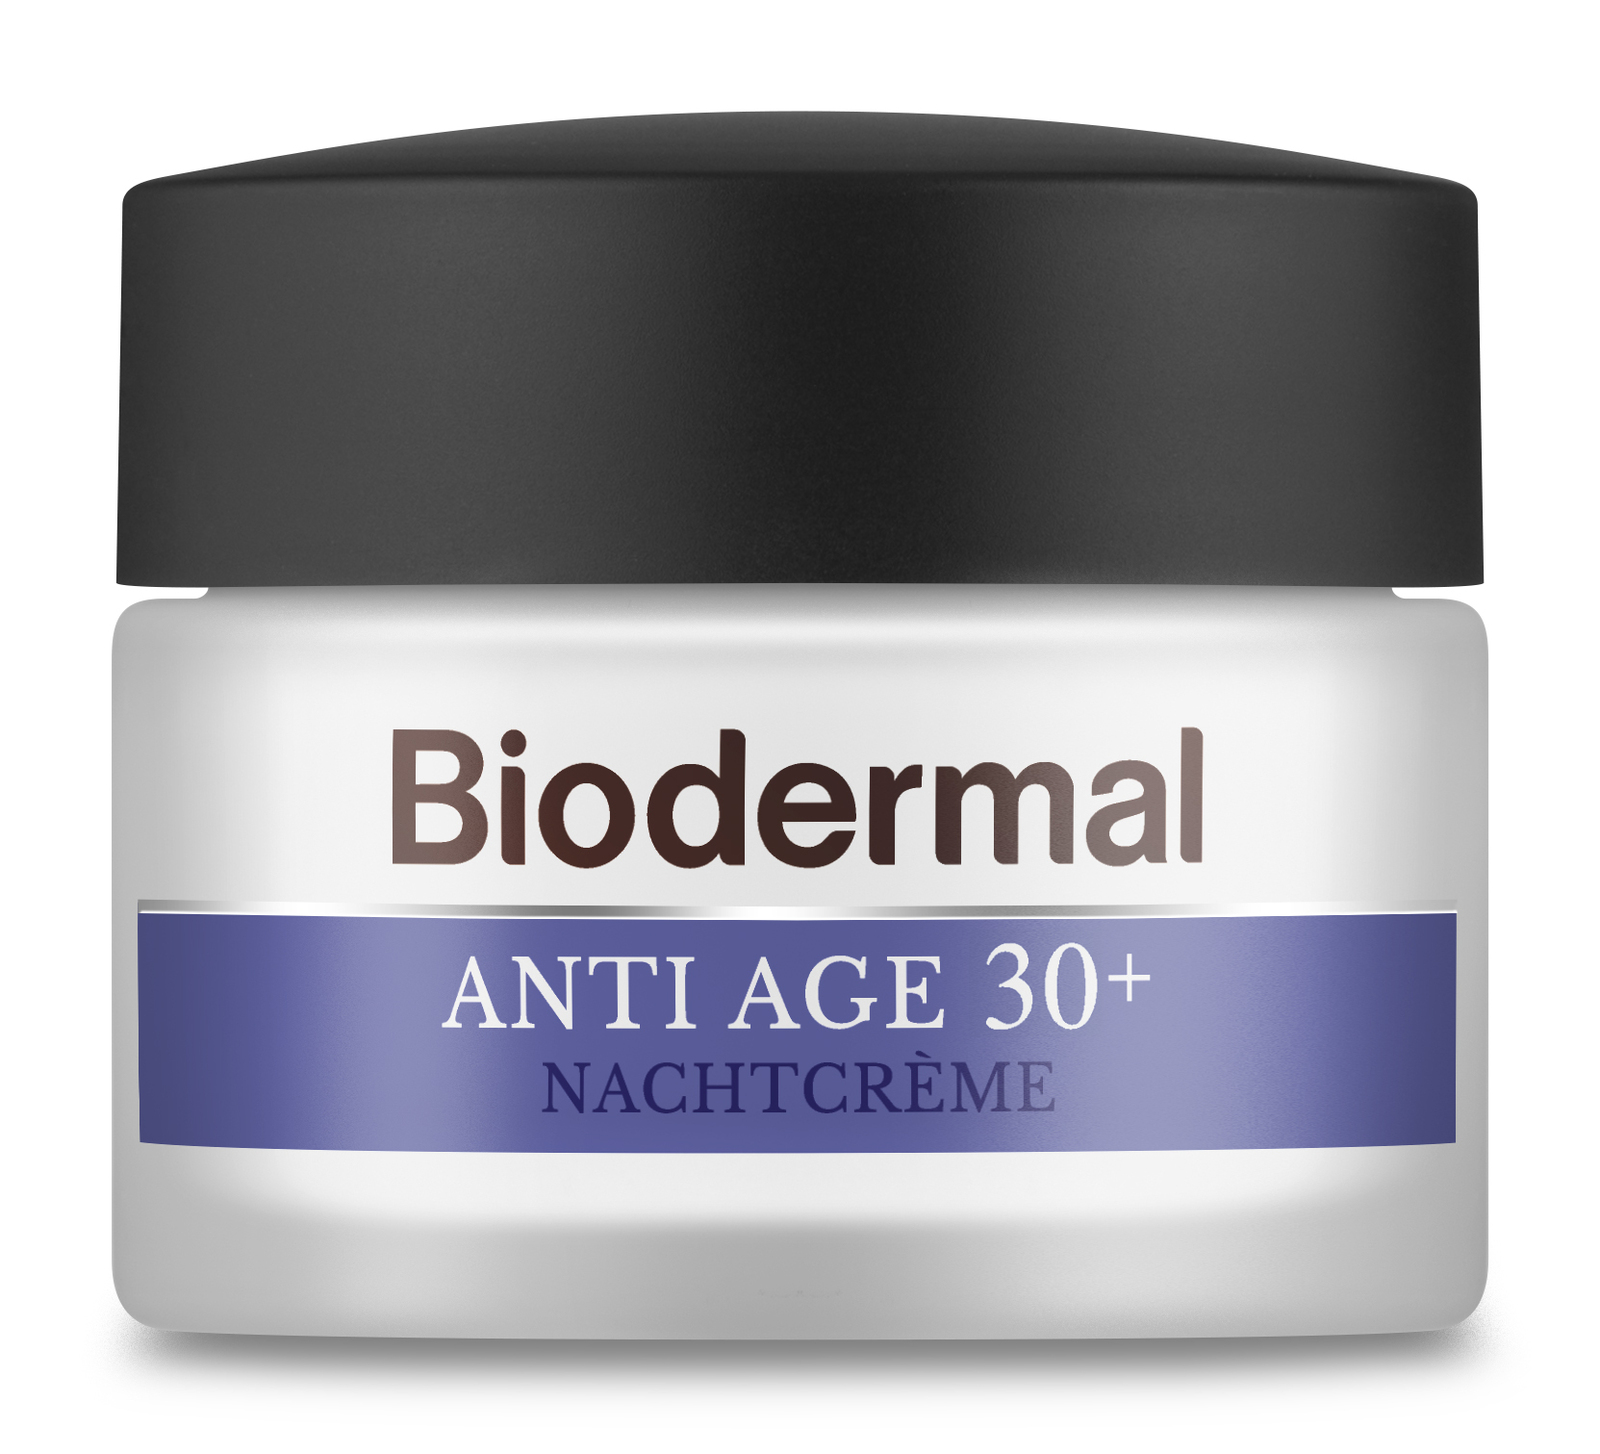 Biodermal Anti Age Nachtcrème 30+